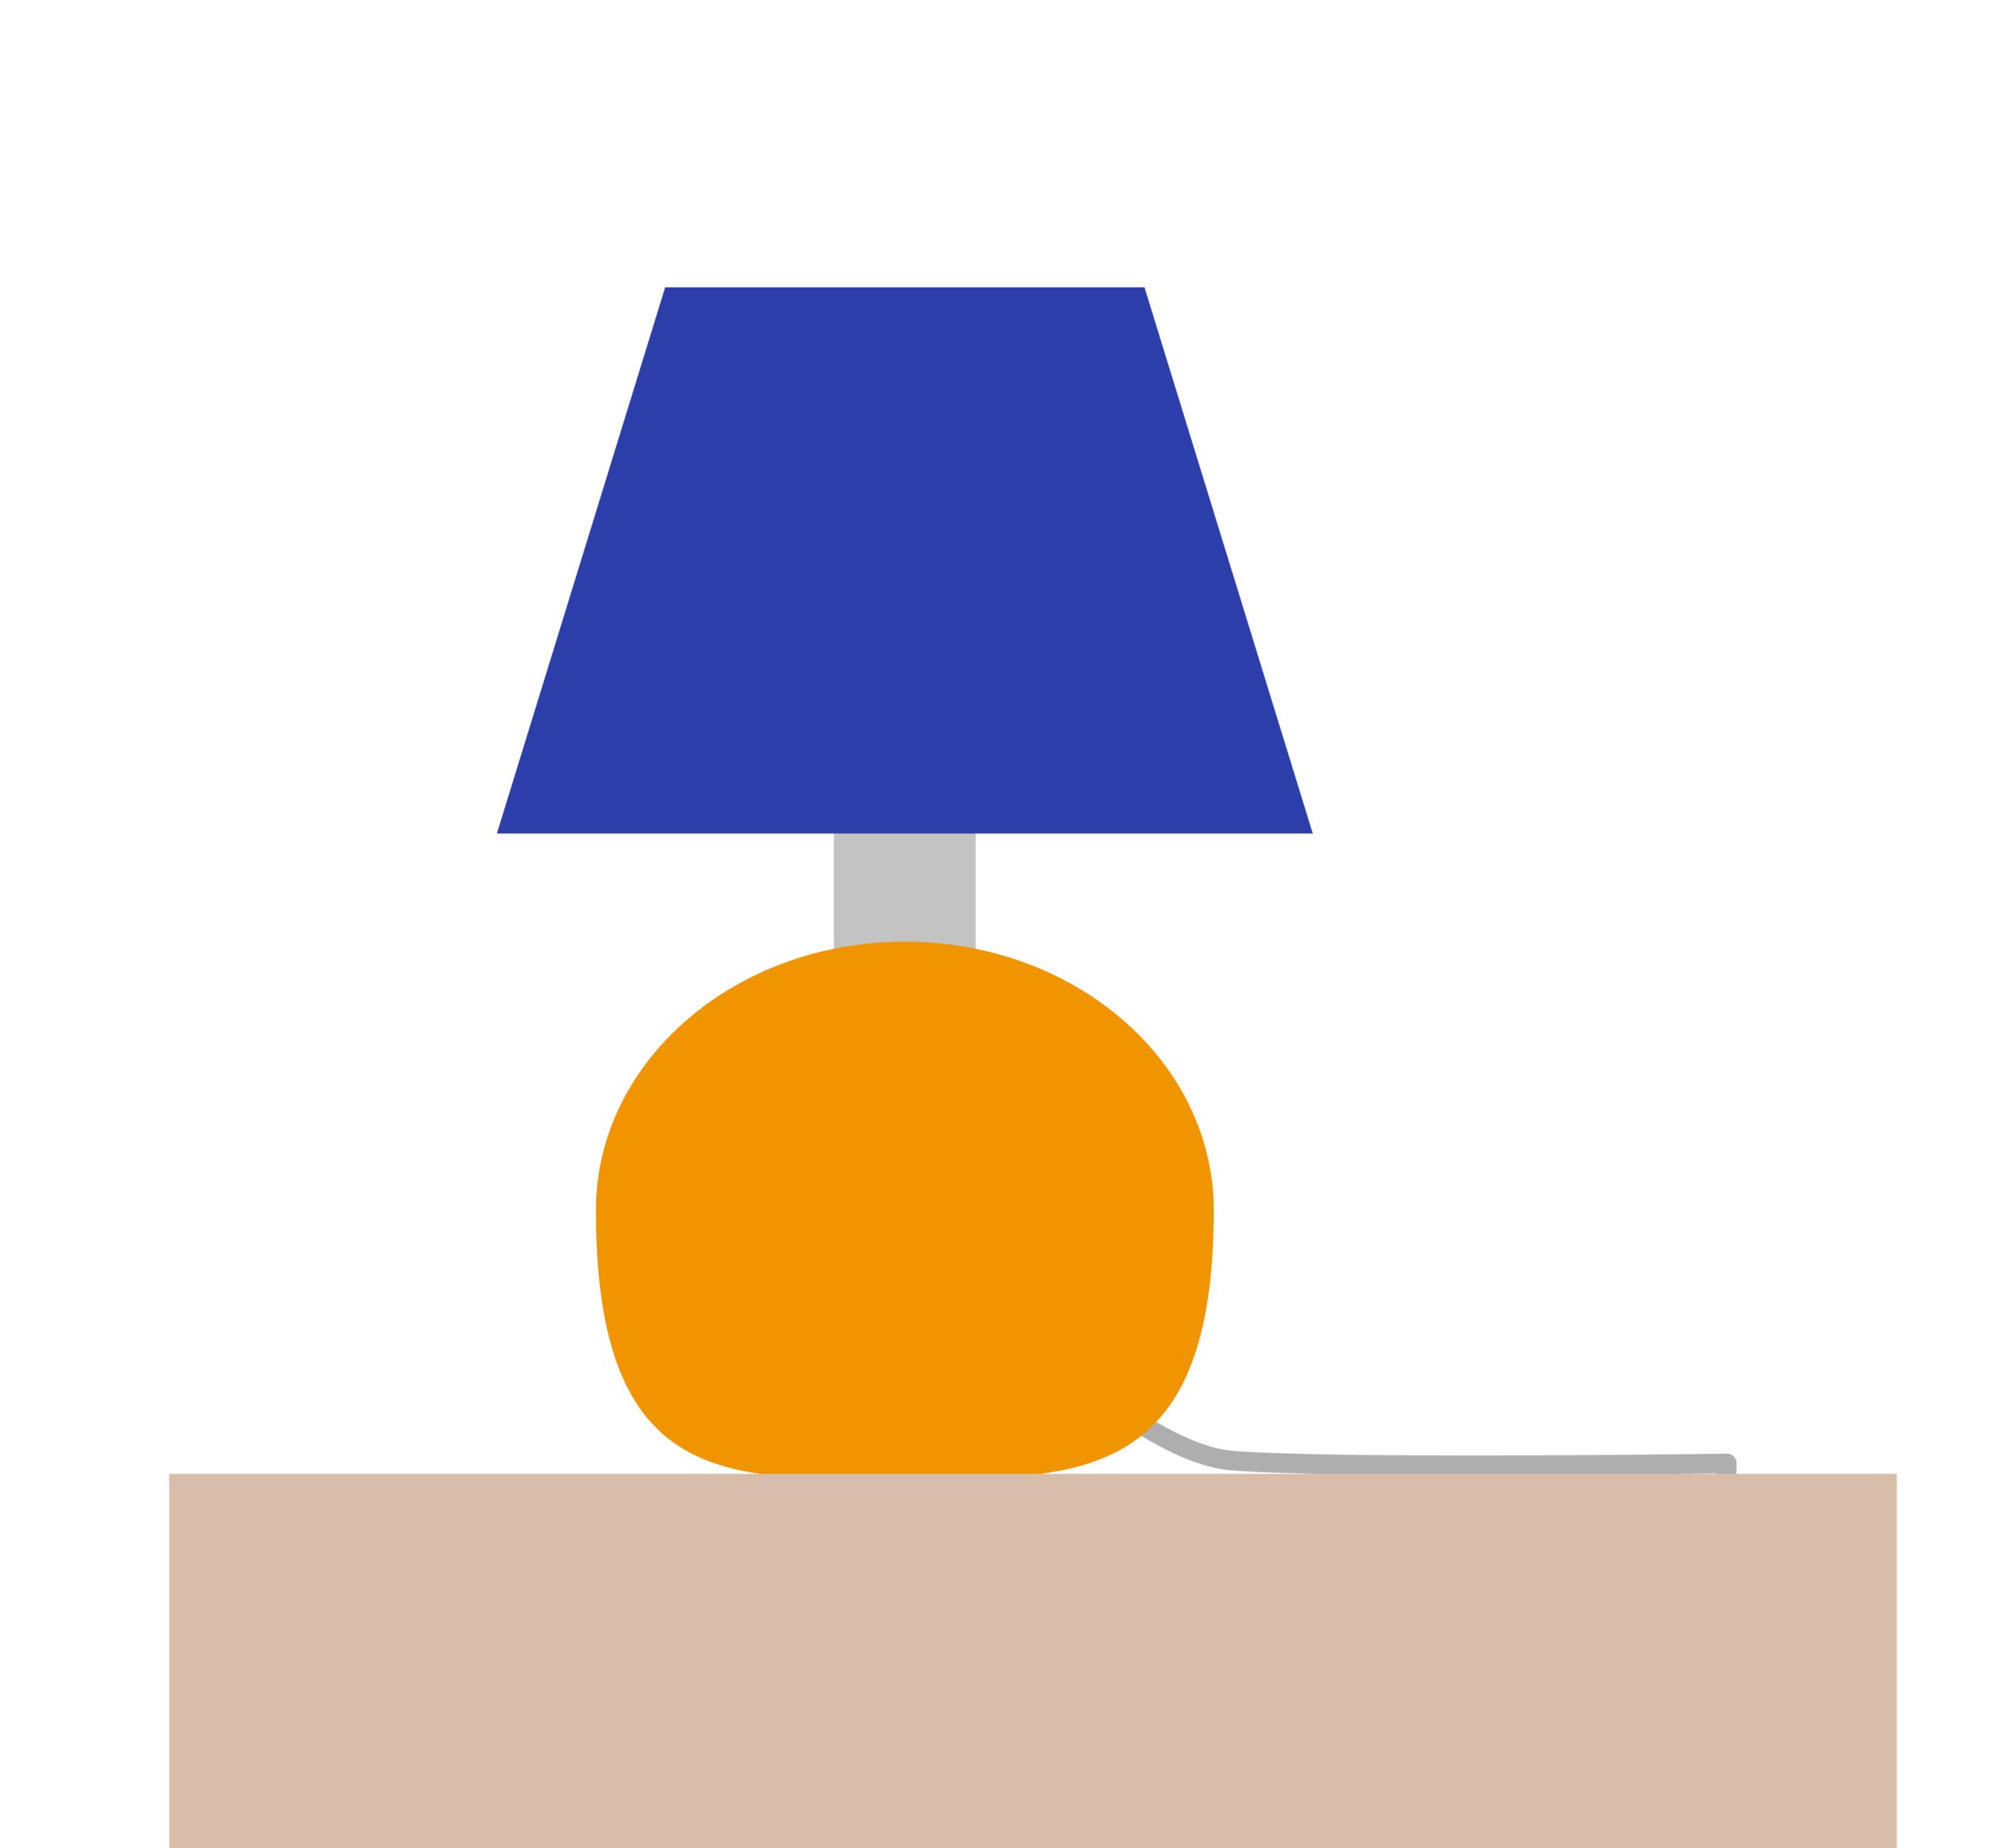 Illustration of bedside lamp